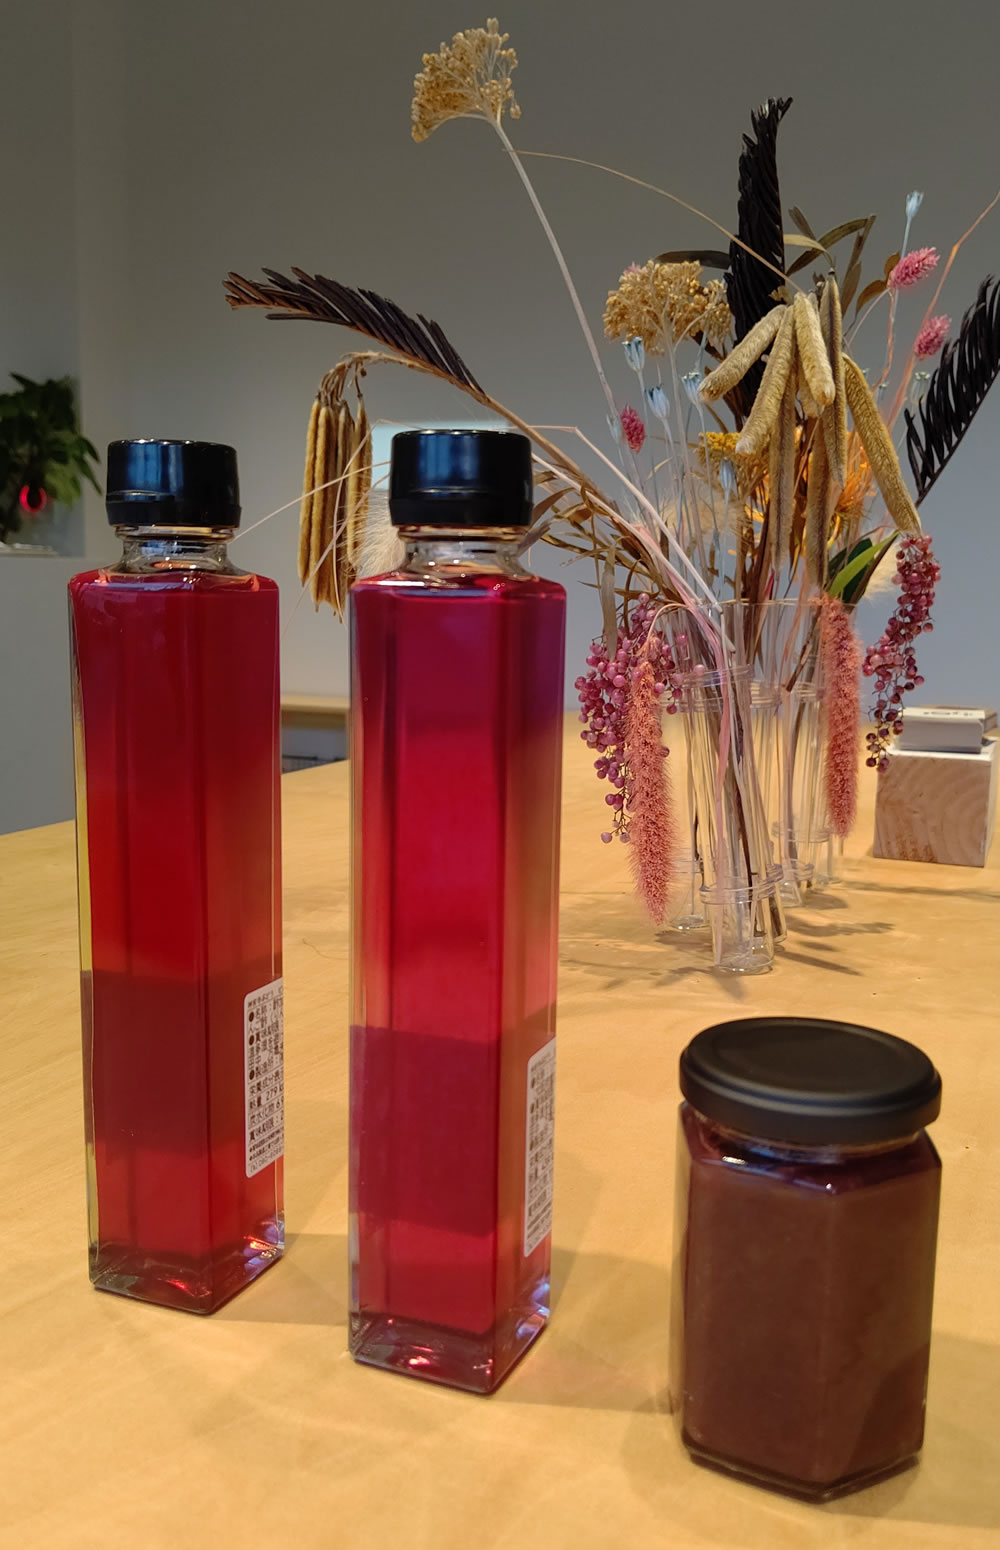 ピオーネも赤紫色が鮮やかで綺麗な色合い。ピオーネビネガー（左）&シロップ（右）＆神宮寺ぶどうビネガージャム